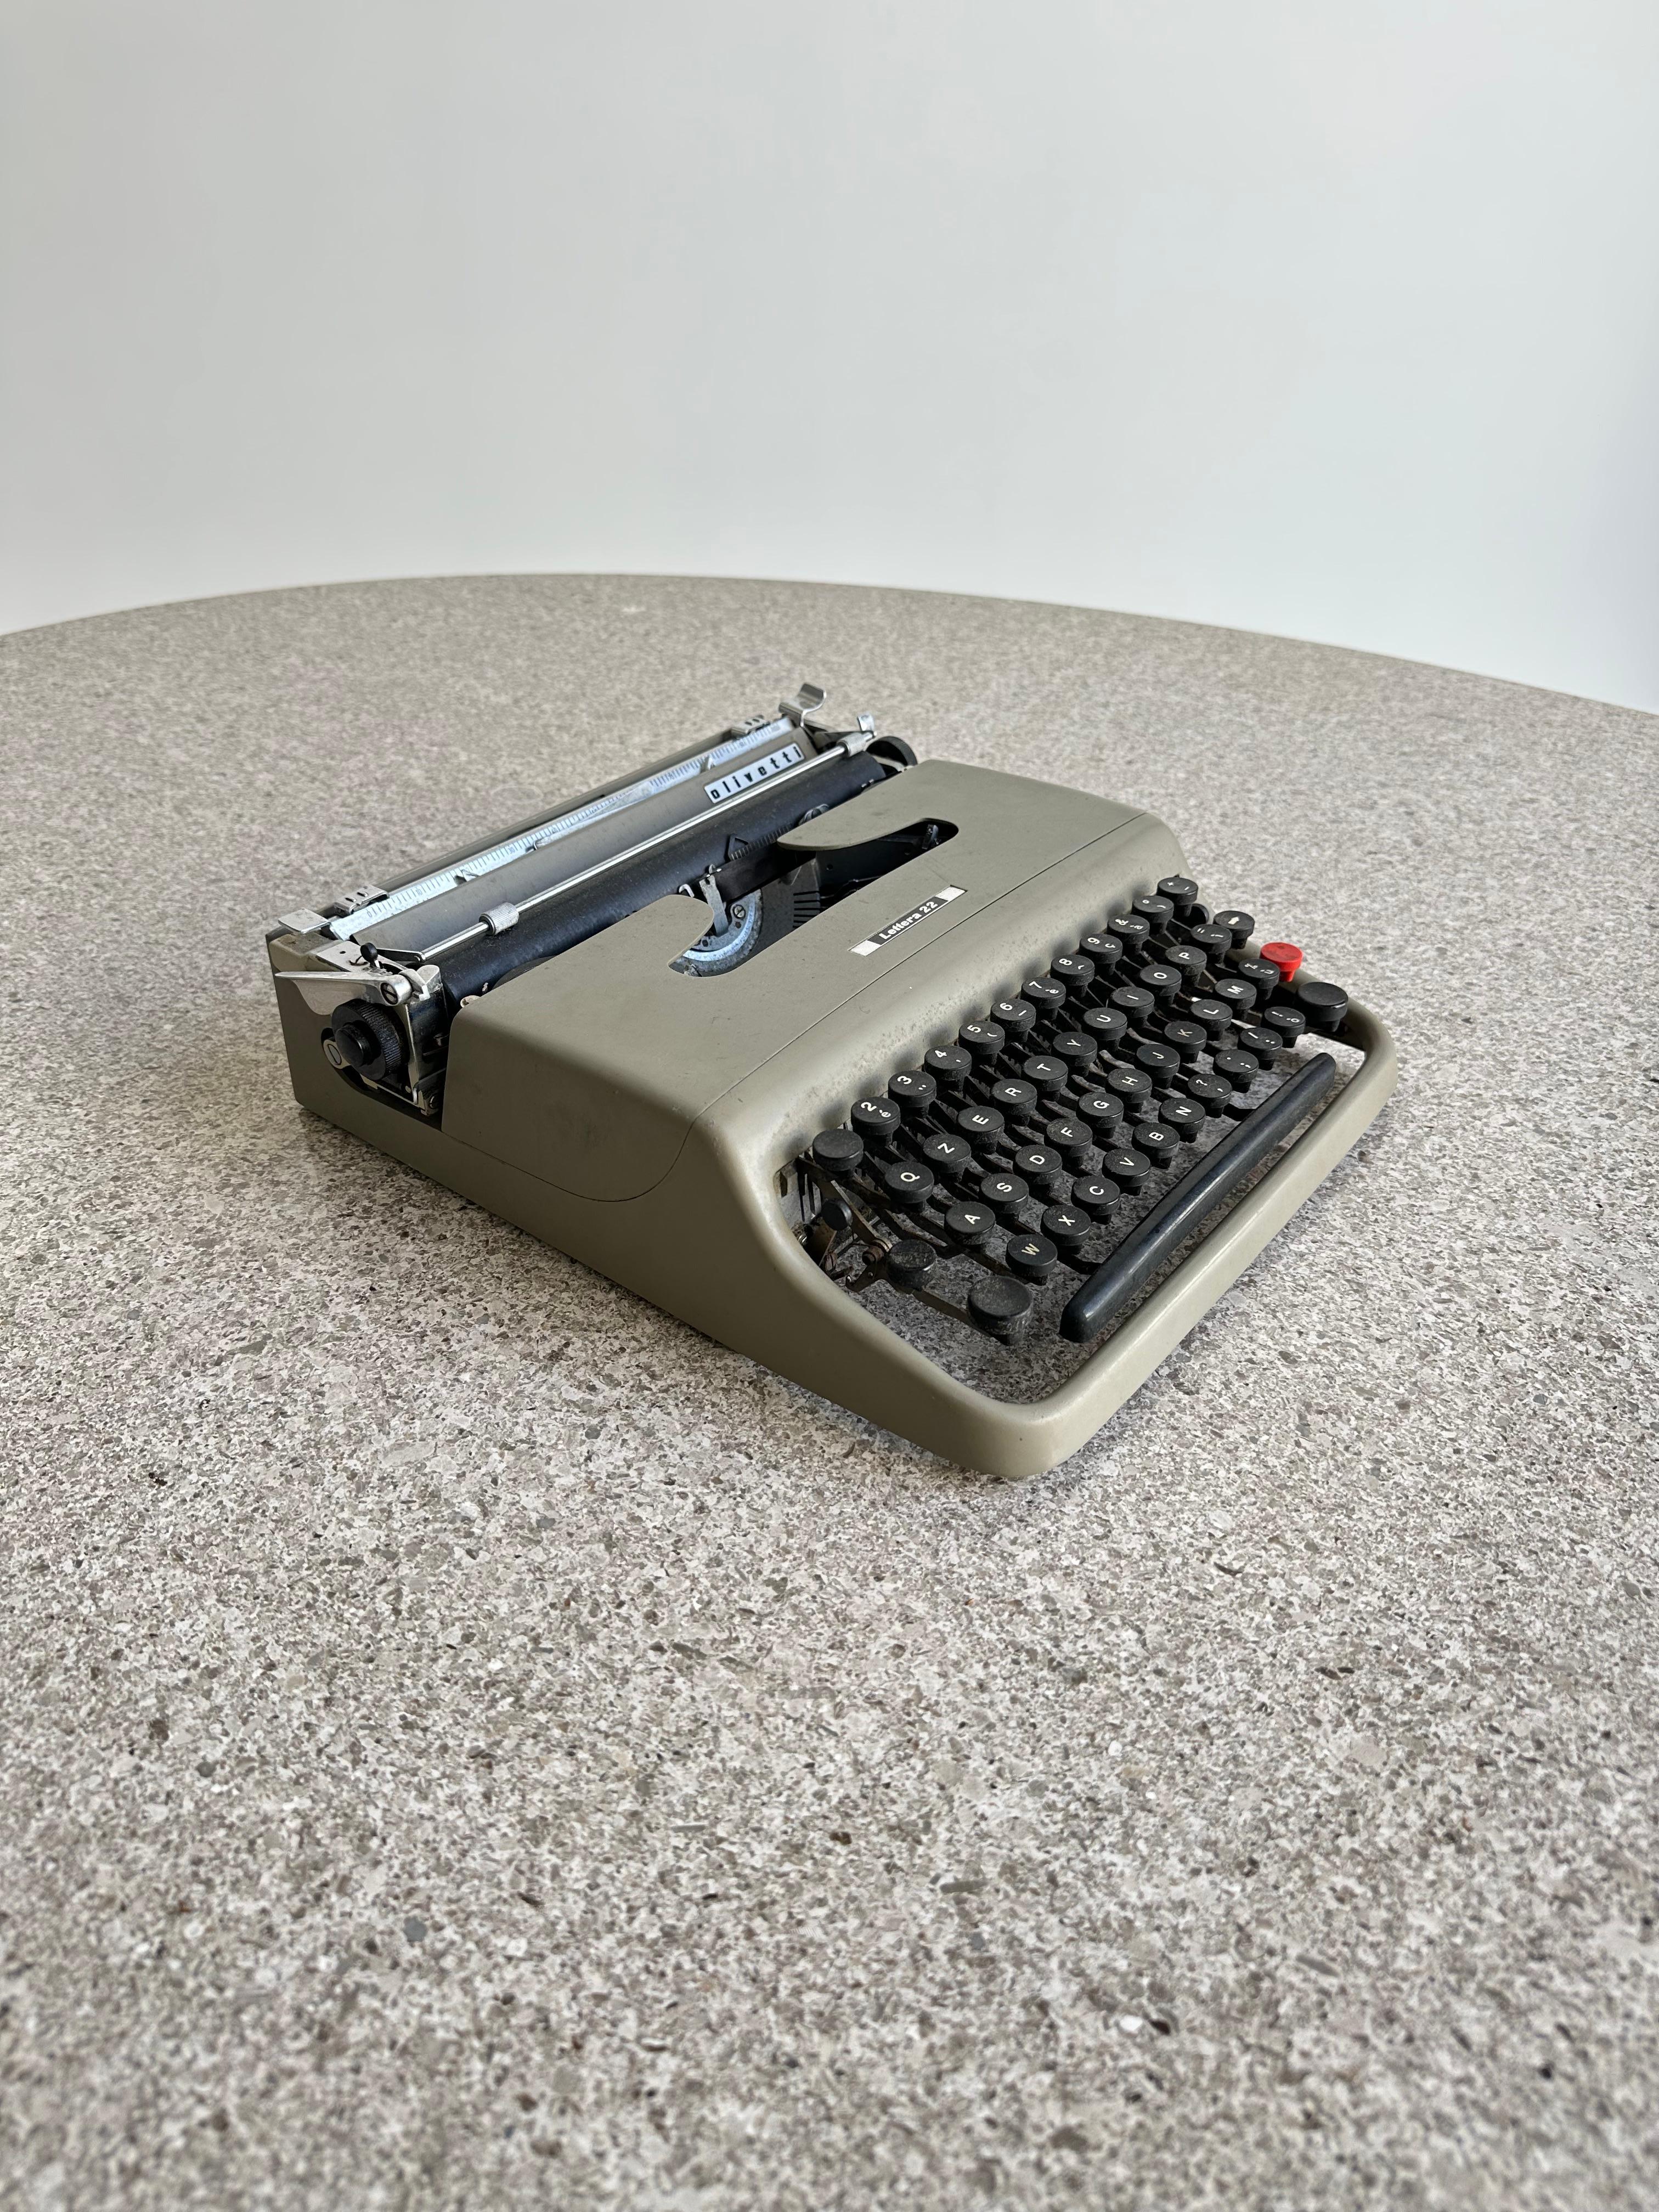 Tragbare Schreibmaschine Lettera 22 aus emailliertem Metall und Kunststoff, entworfen von Marcello Nizzoli und hergestellt von dem progressiven Hersteller Olivetti in Italien, um 1954. Nizzoli (1887-1969), ein Maler, Grafiker und Architekt, war in